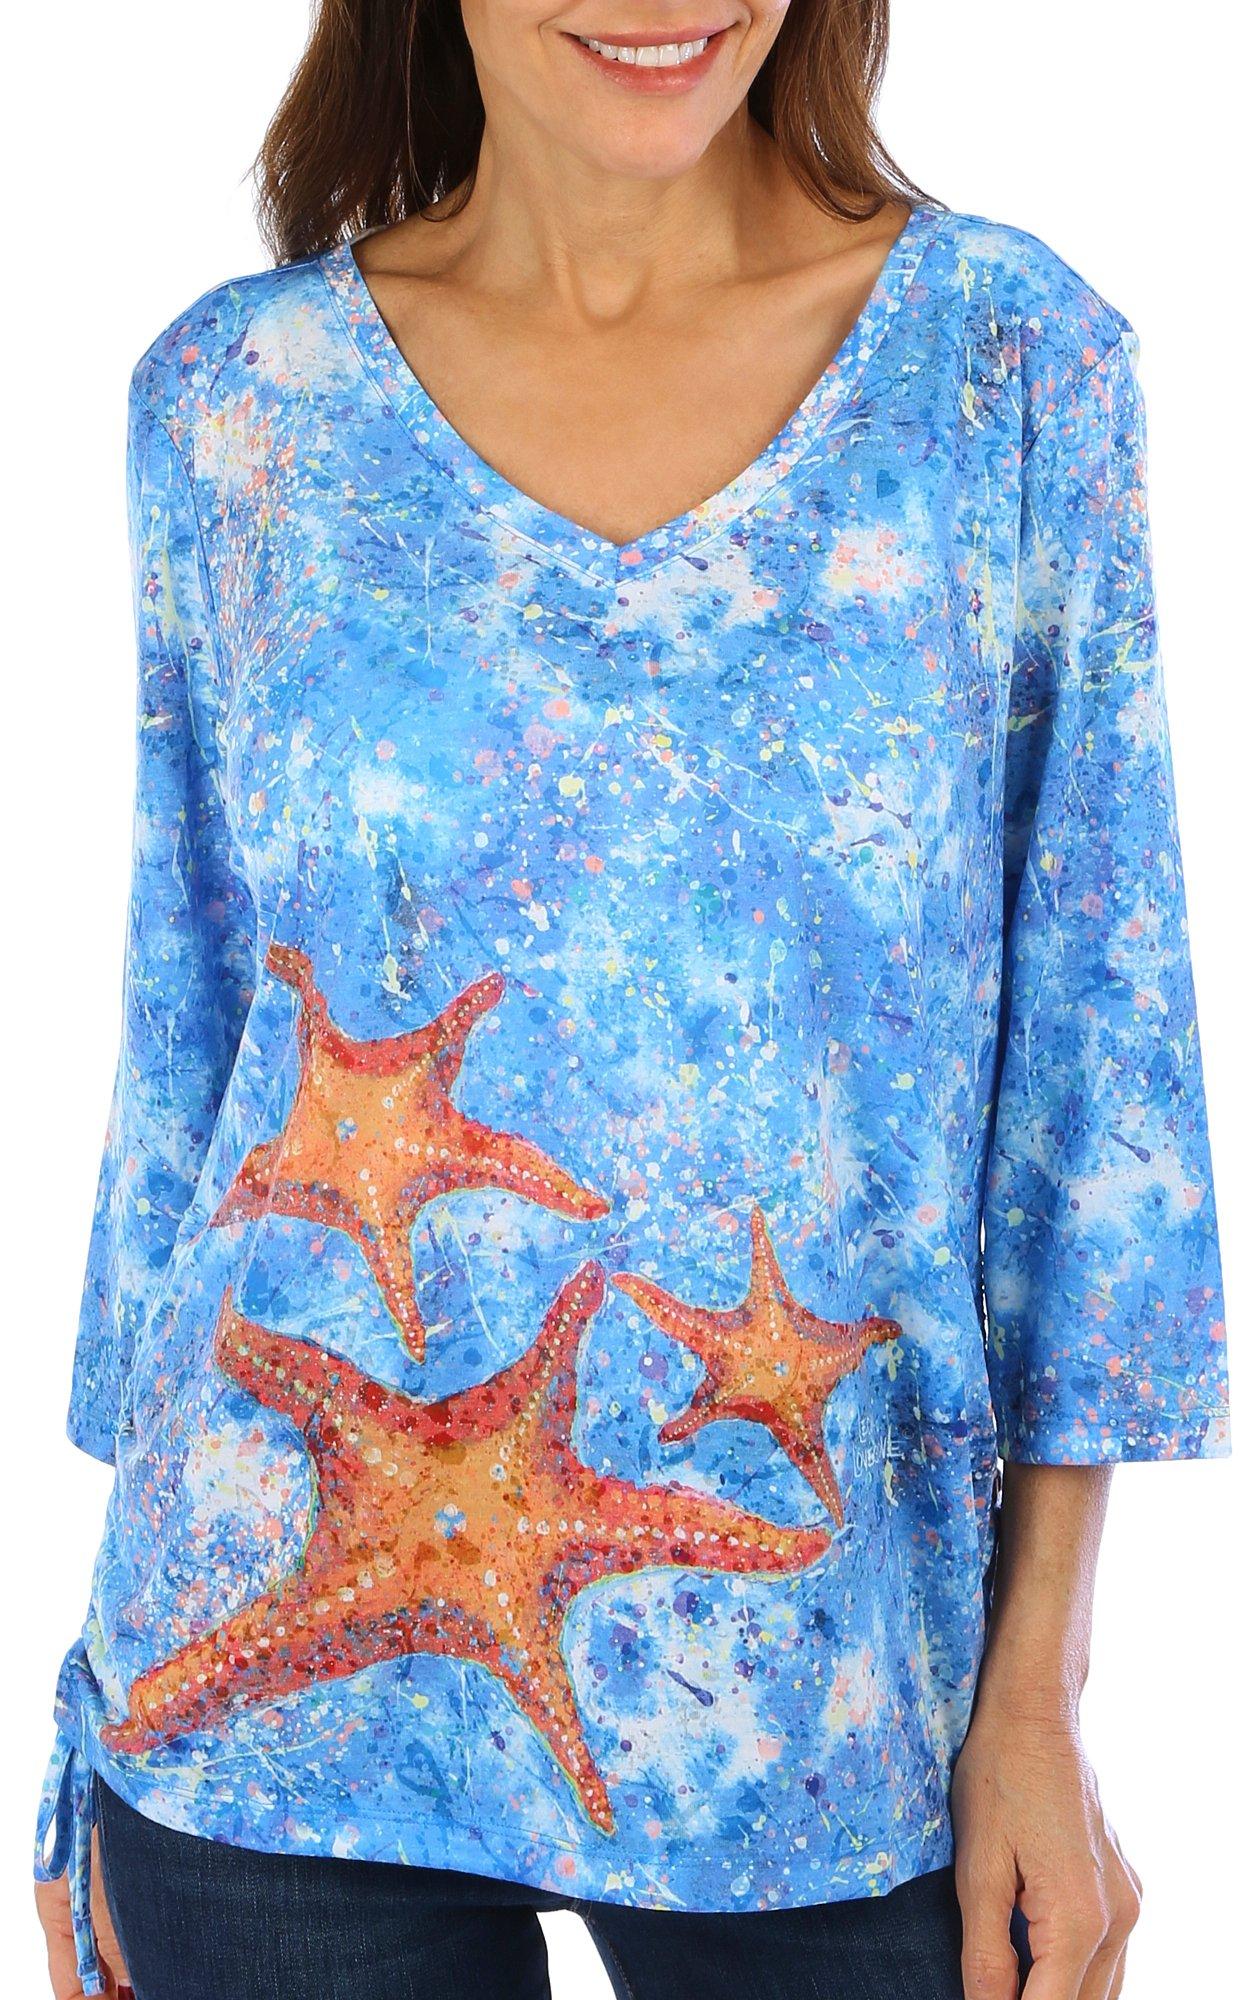 Womens Celebratory Starfish 3/4 Sleeve Top